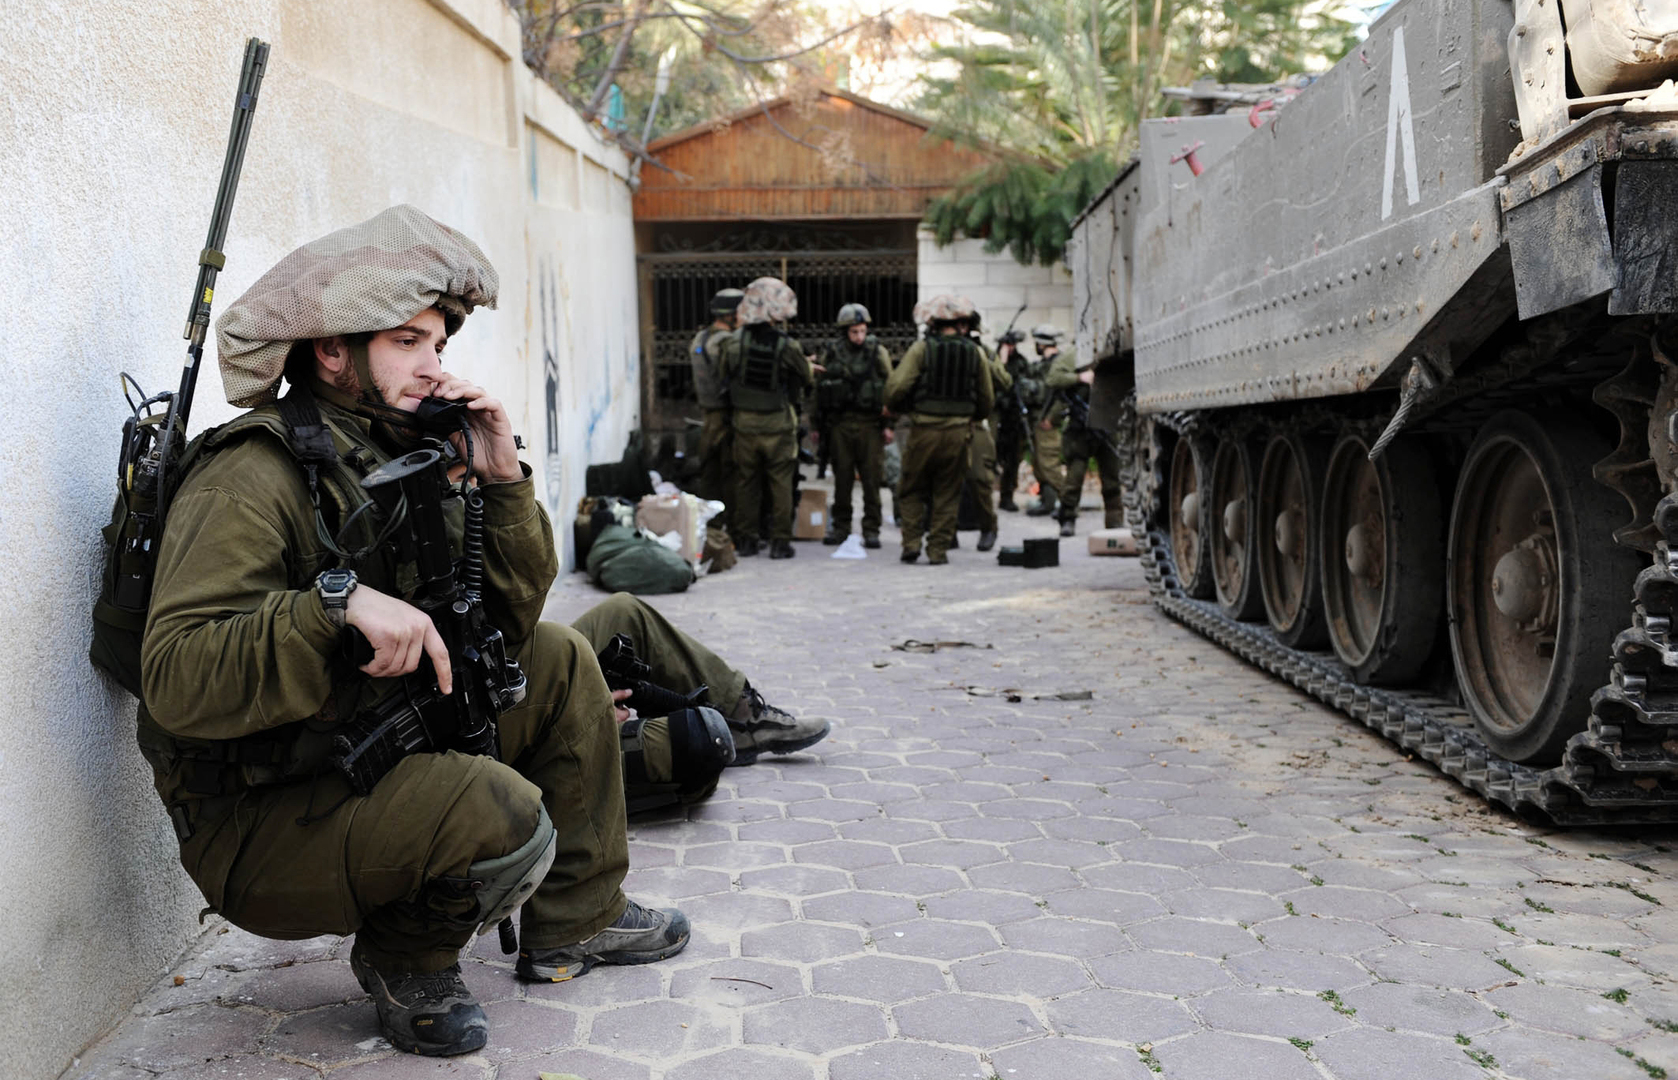 الجيش الاسرائيلي: نقوم ببناء حواجز على الطرق بالتعاون مع الشرطة في جميع المناطق